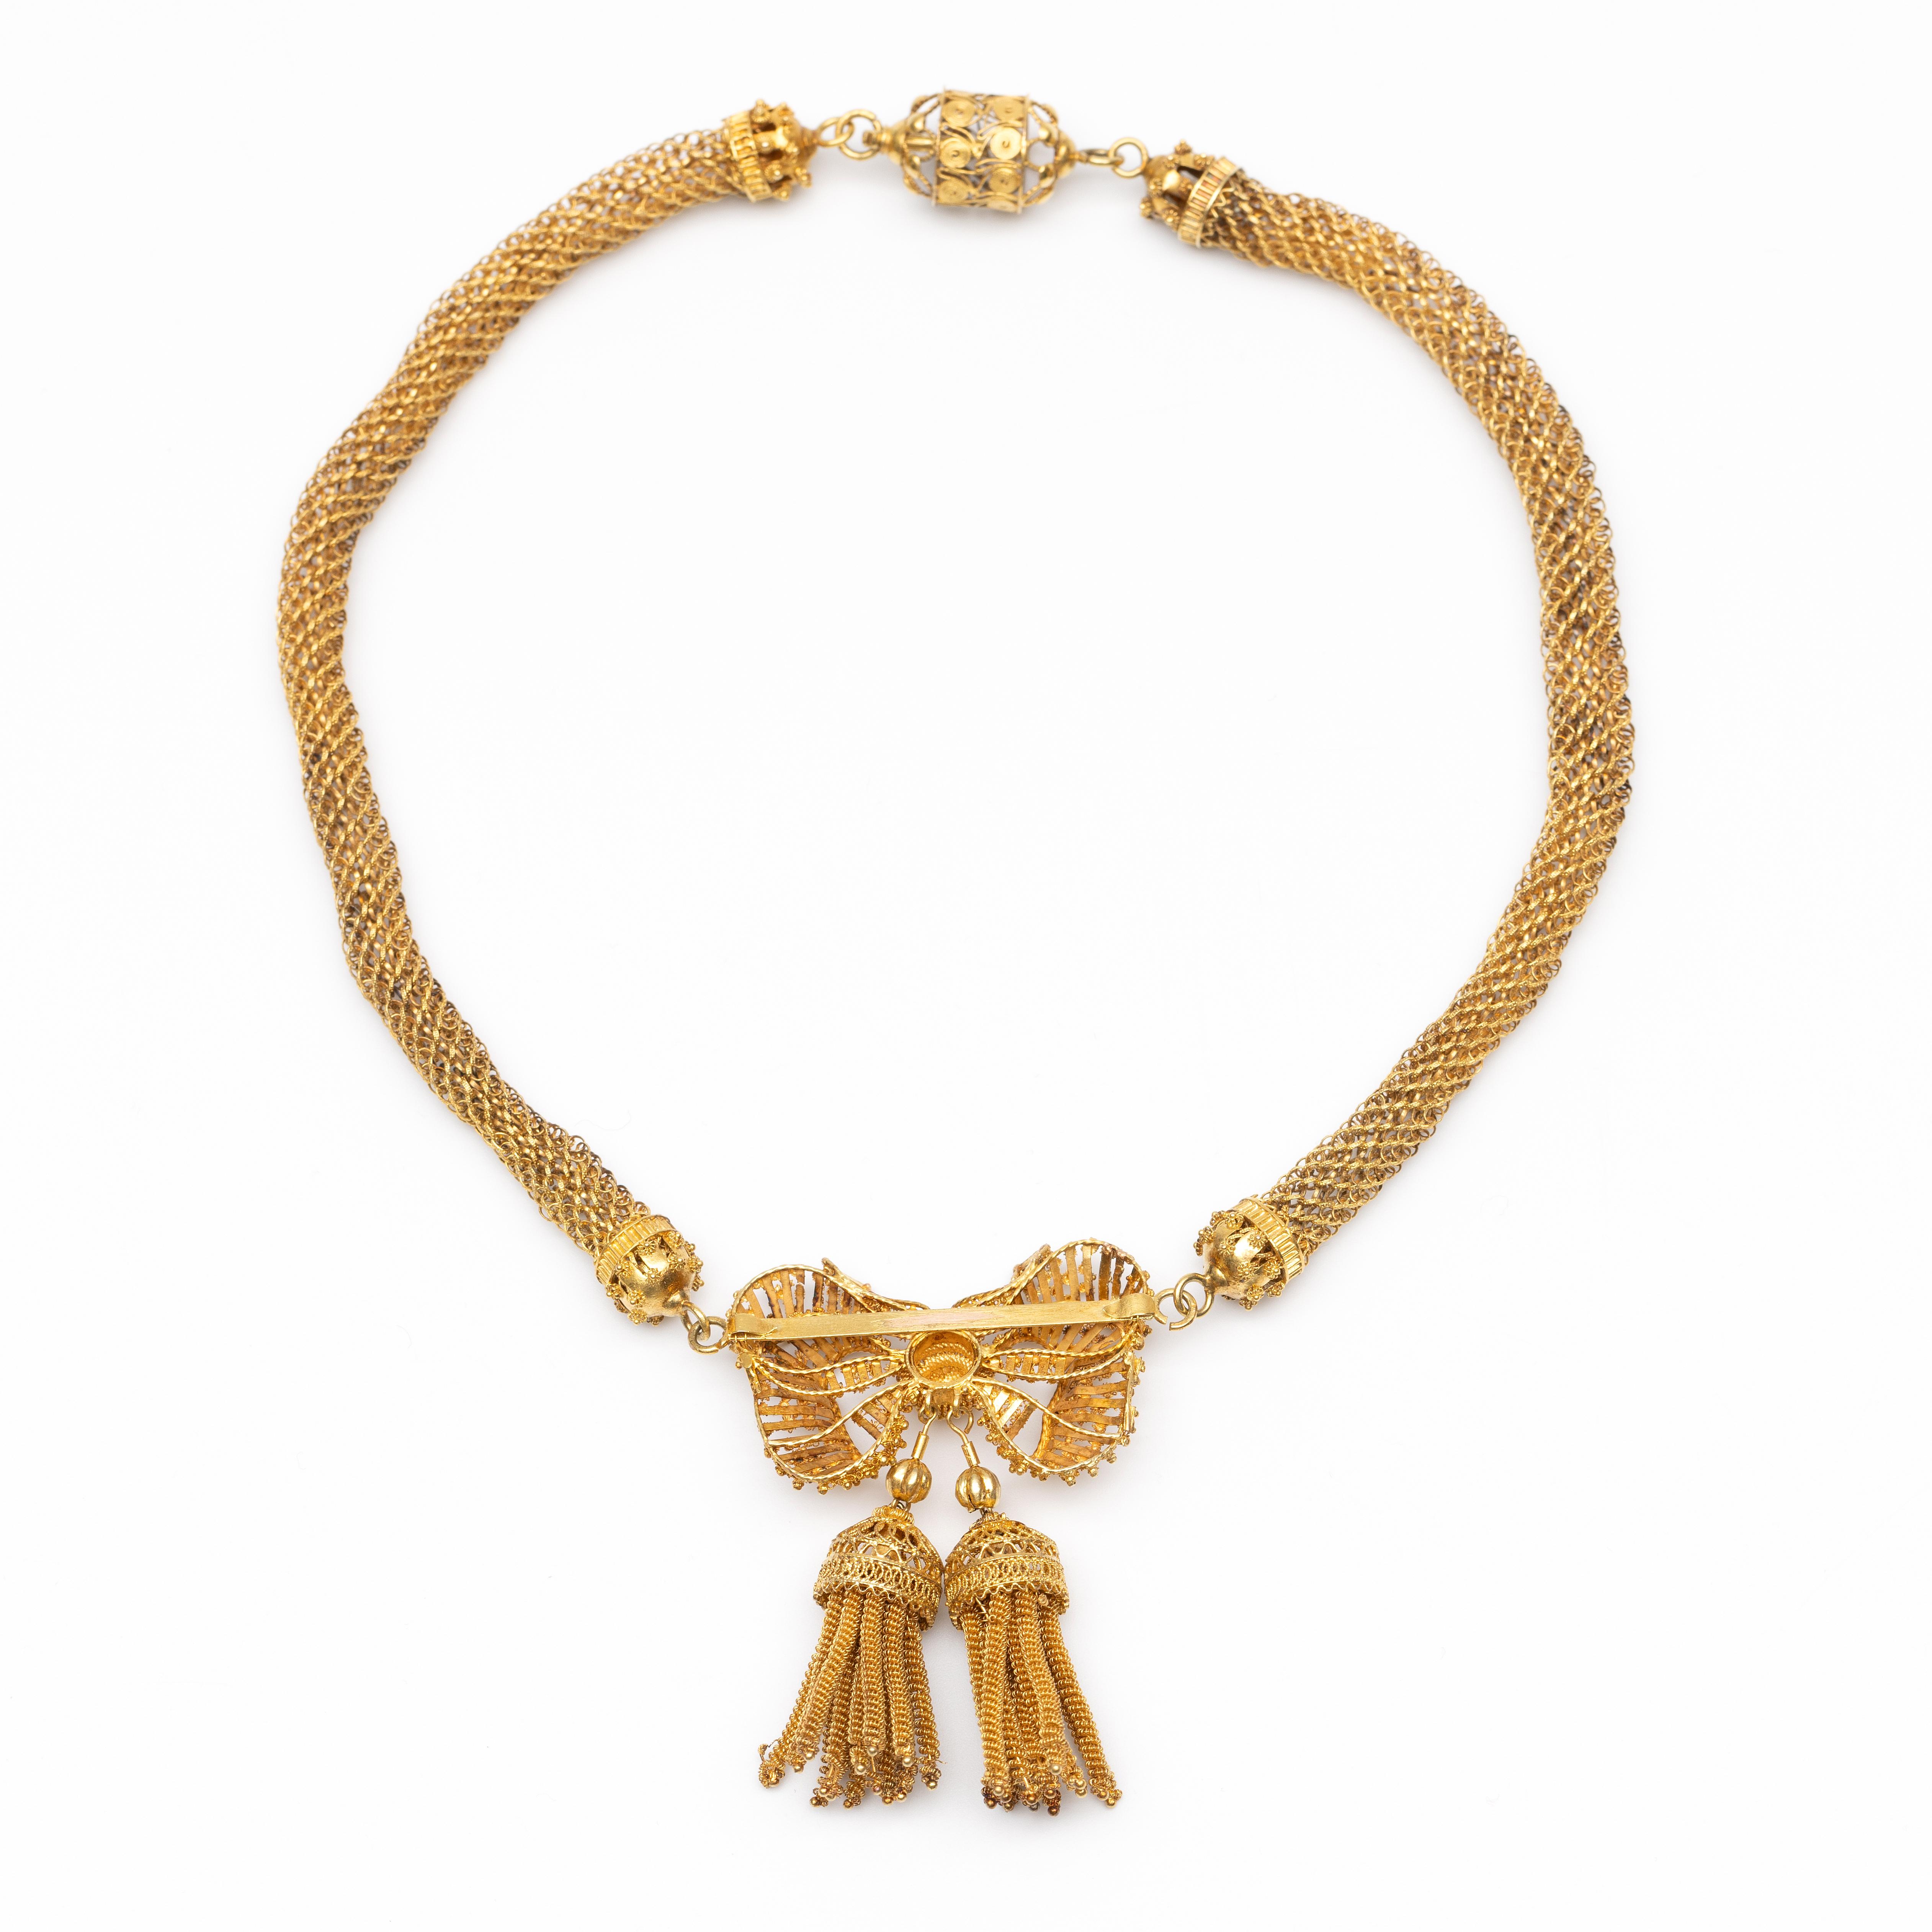 Beneden wettelijk gehalte gouden cannetille collier, 1e helft 19e eeuw. - Image 2 of 2